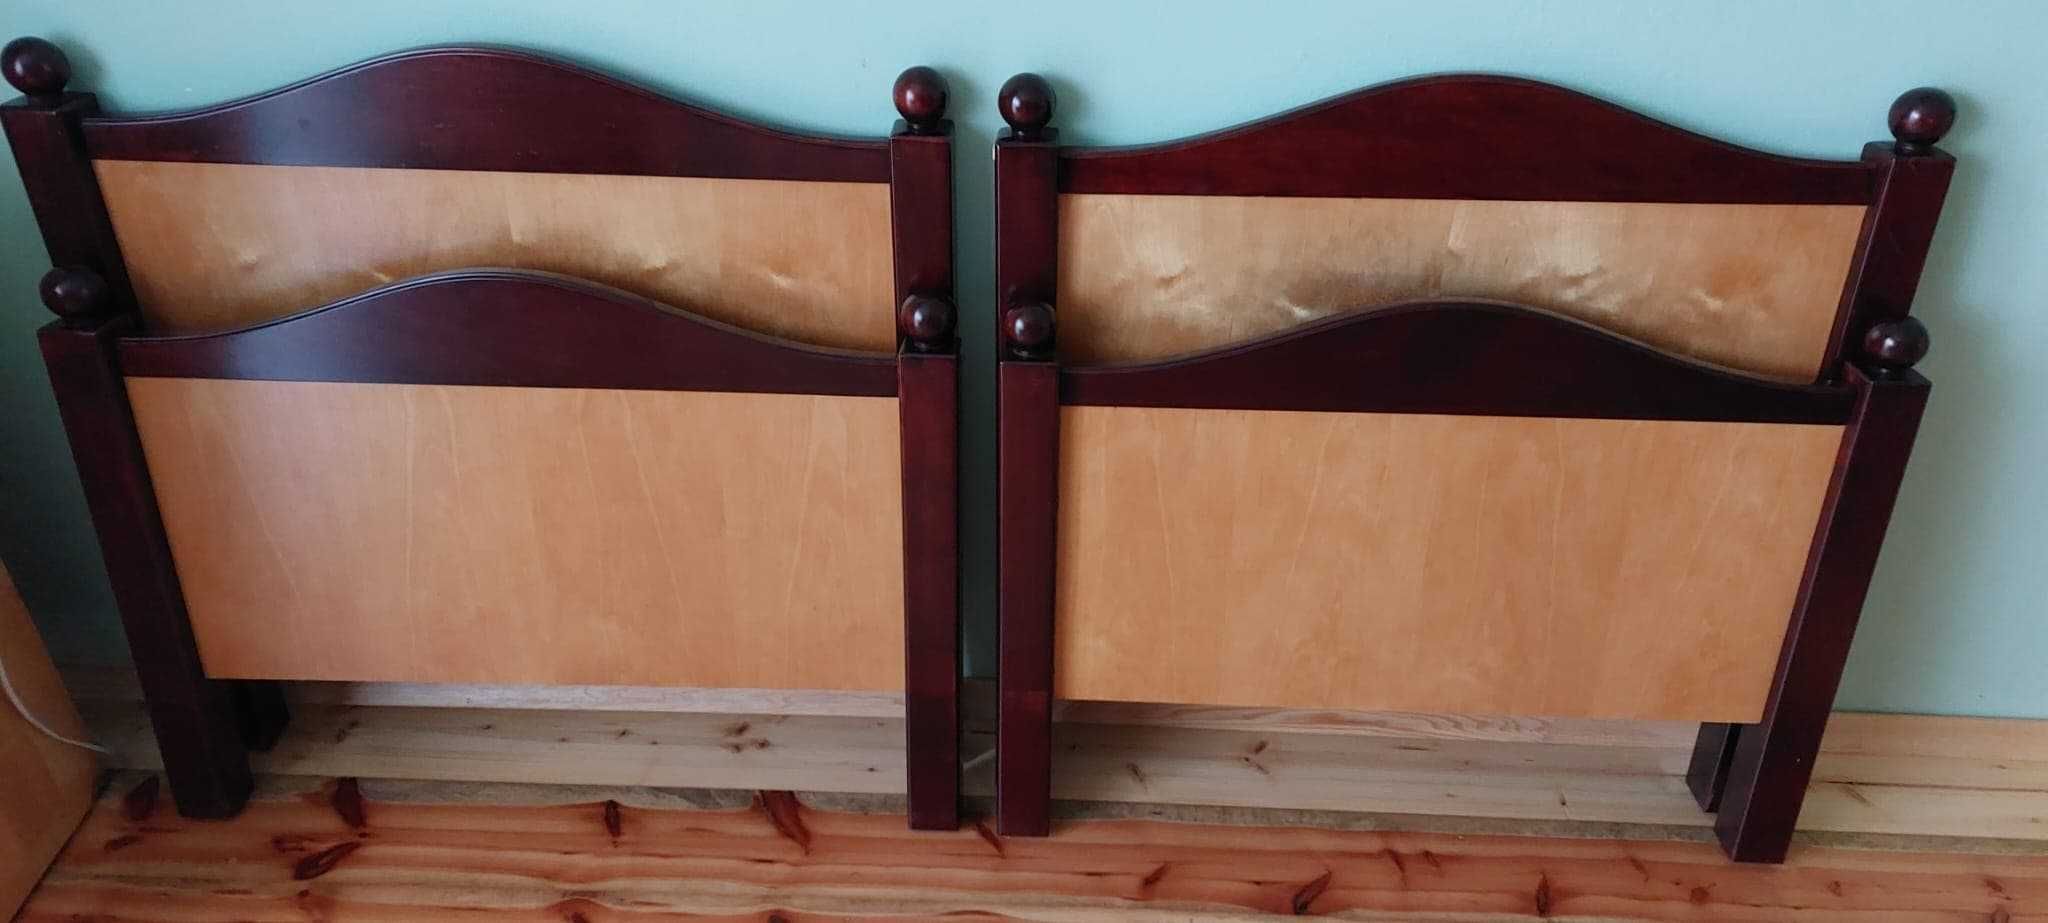 Łóżka sypialniane drewniane 200x80cm 2 sztuki stan bdb